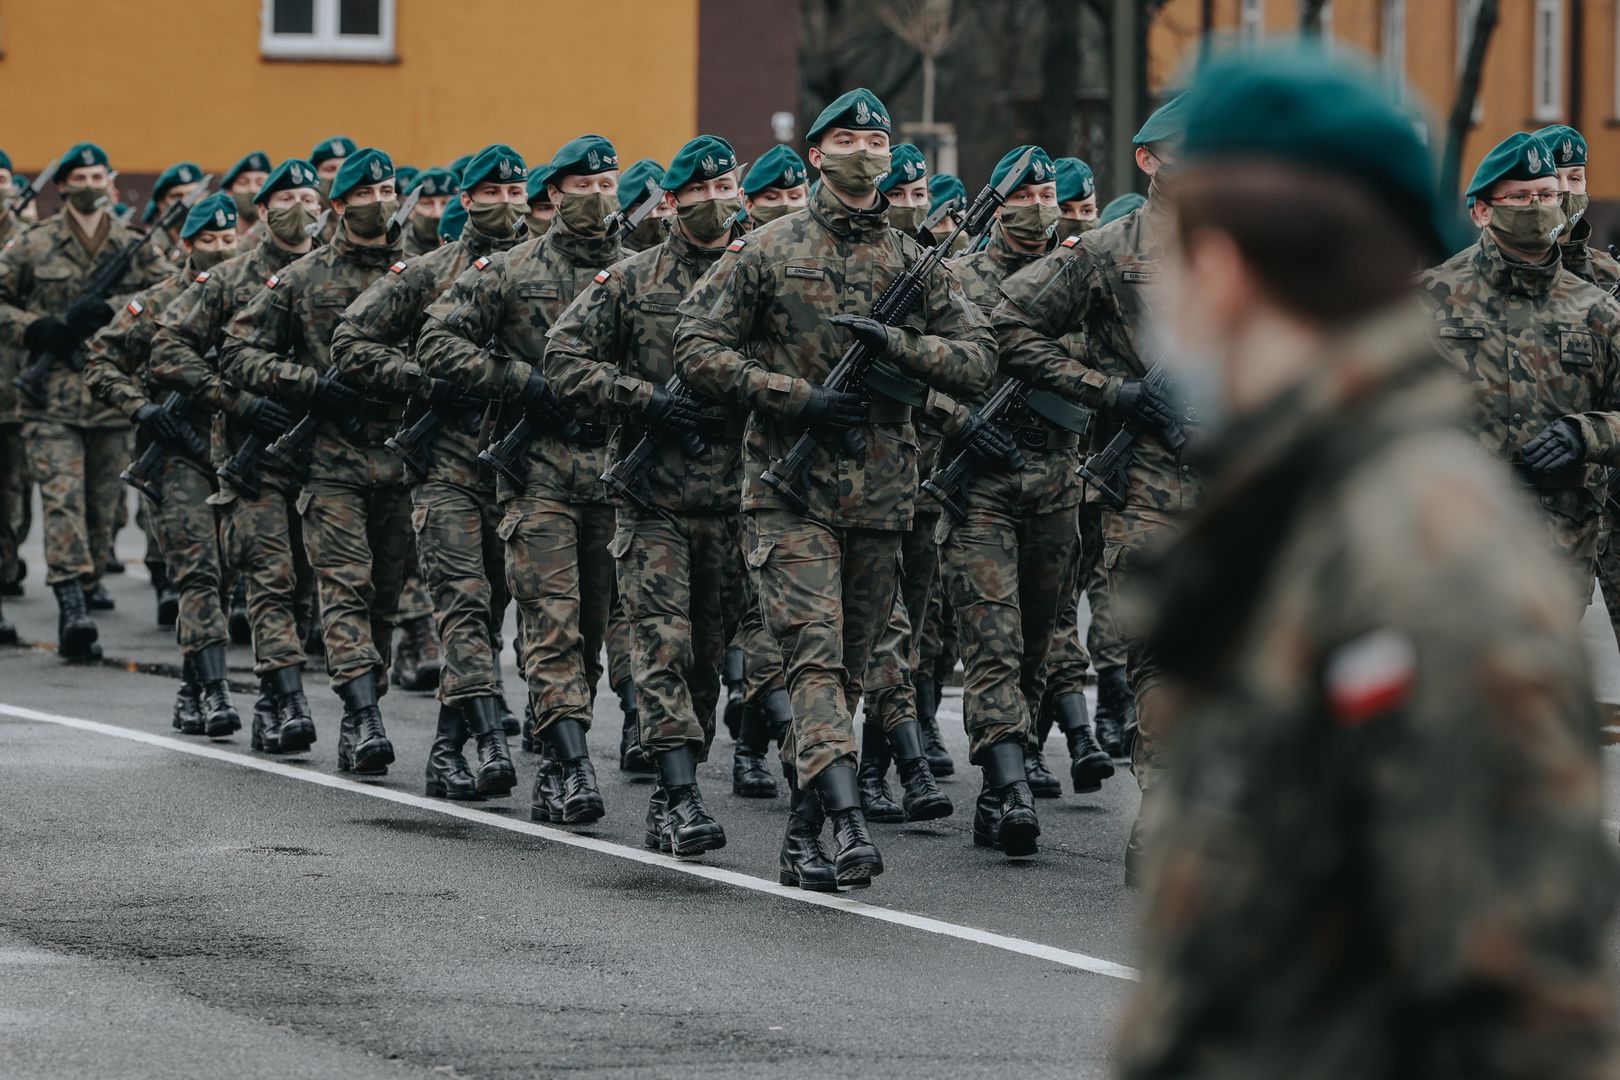 W Polsce wróci pobór? "Czas masowych armii minął"